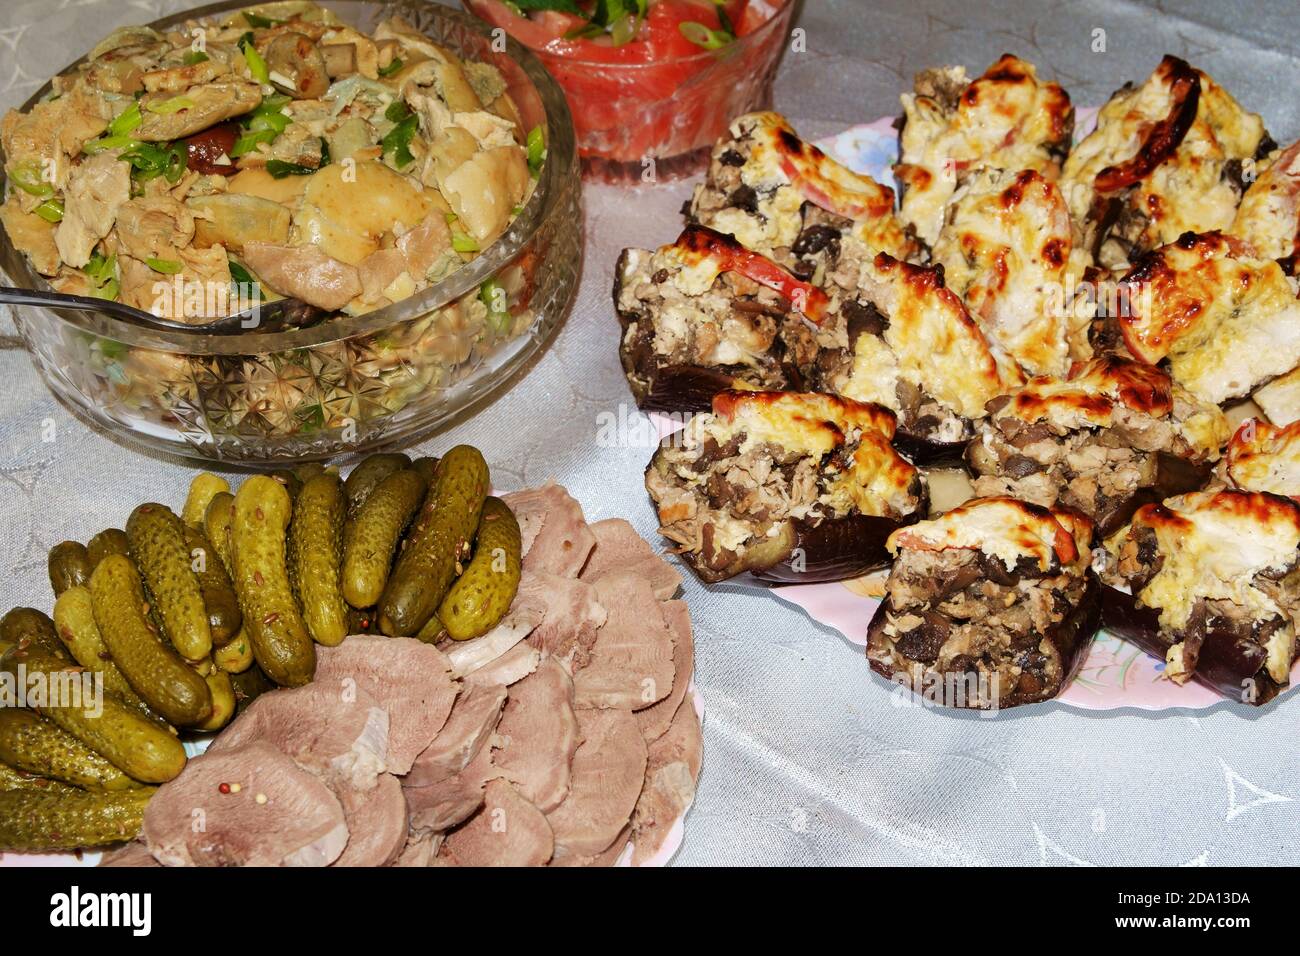 Festlicher Tisch. Gekochte Schweinefleisch Zunge mit Gurken und Gewürzen, gesalzene Pilze gewürzt mit Kräutern, gefüllte Aubergine. Selektiver Fokus. Stockfoto